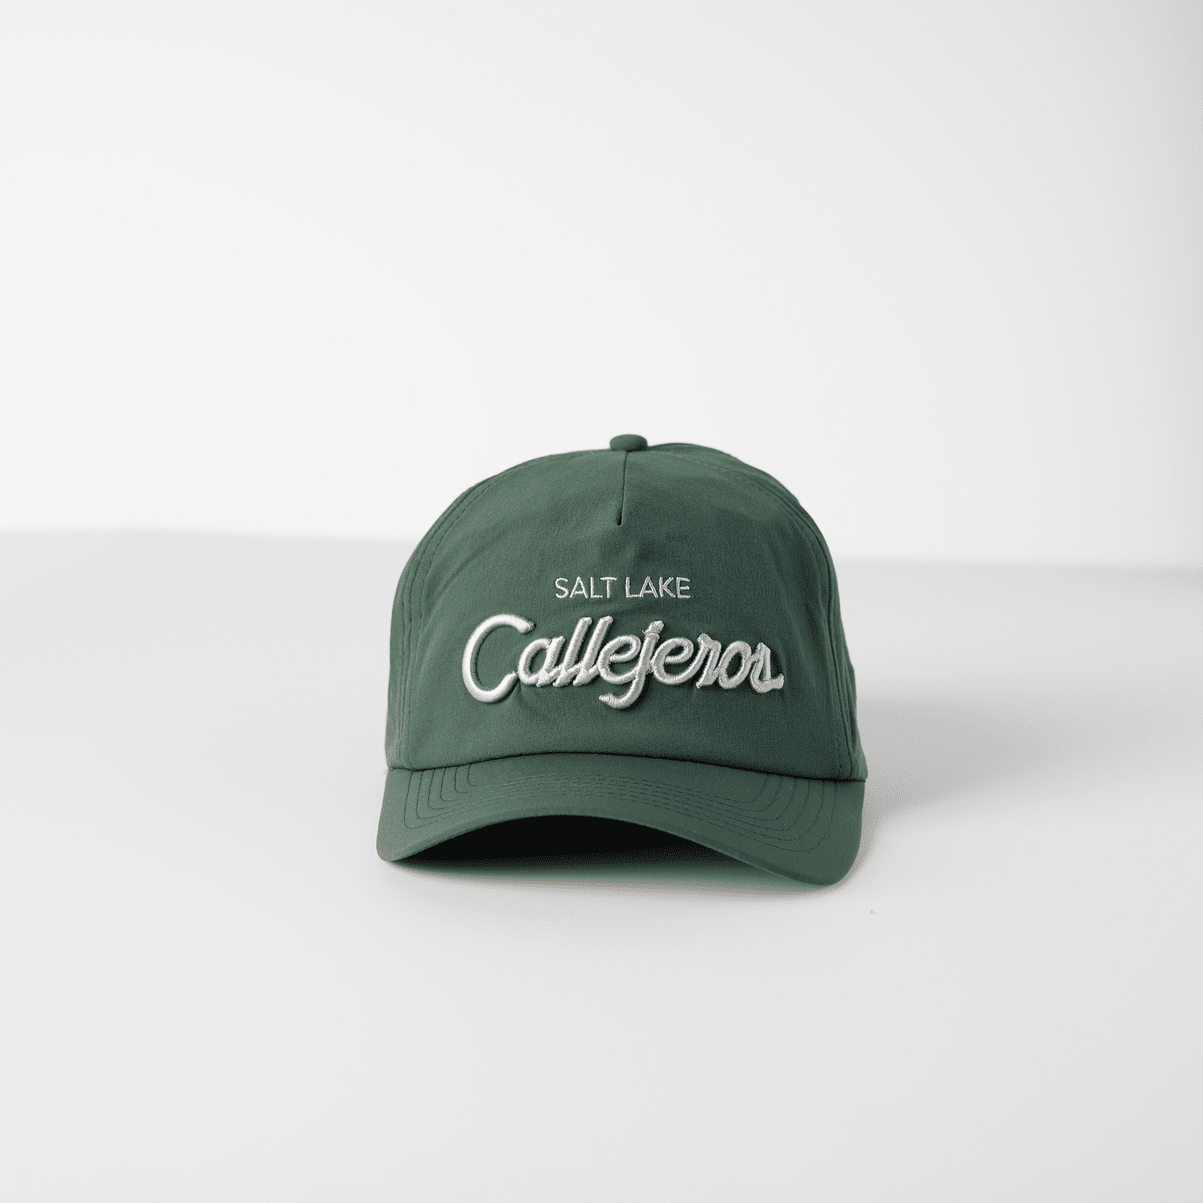 Salt Lake Callejeros Ballcap